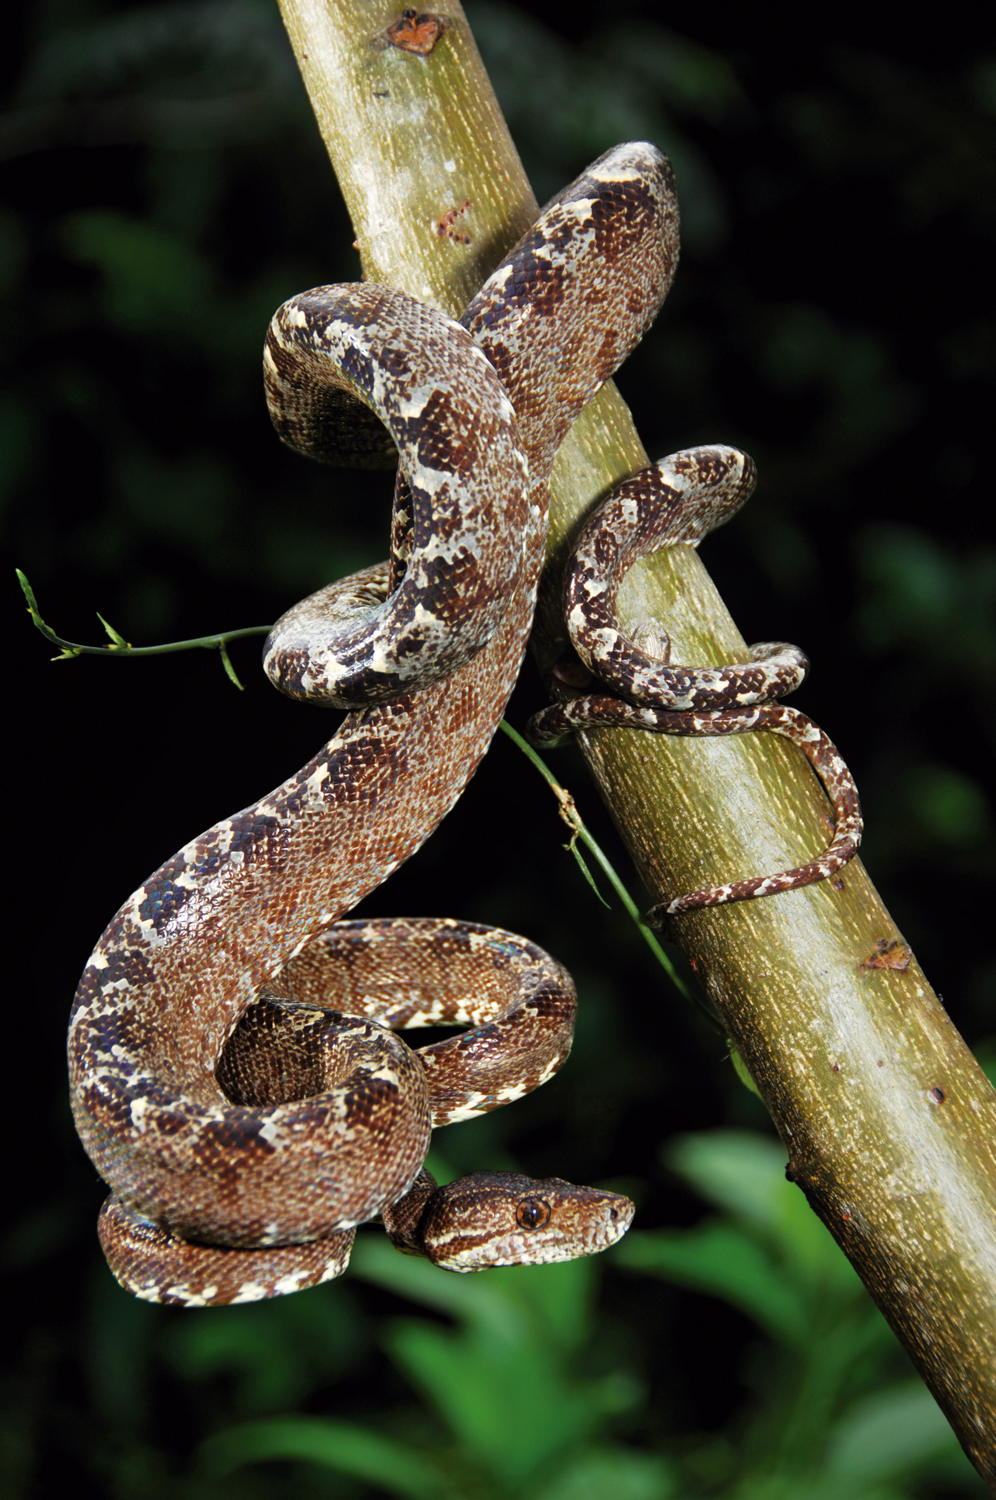 Cobra (Corallus hortulanus) na Reserva Extrativista Terra do Meio, Pará